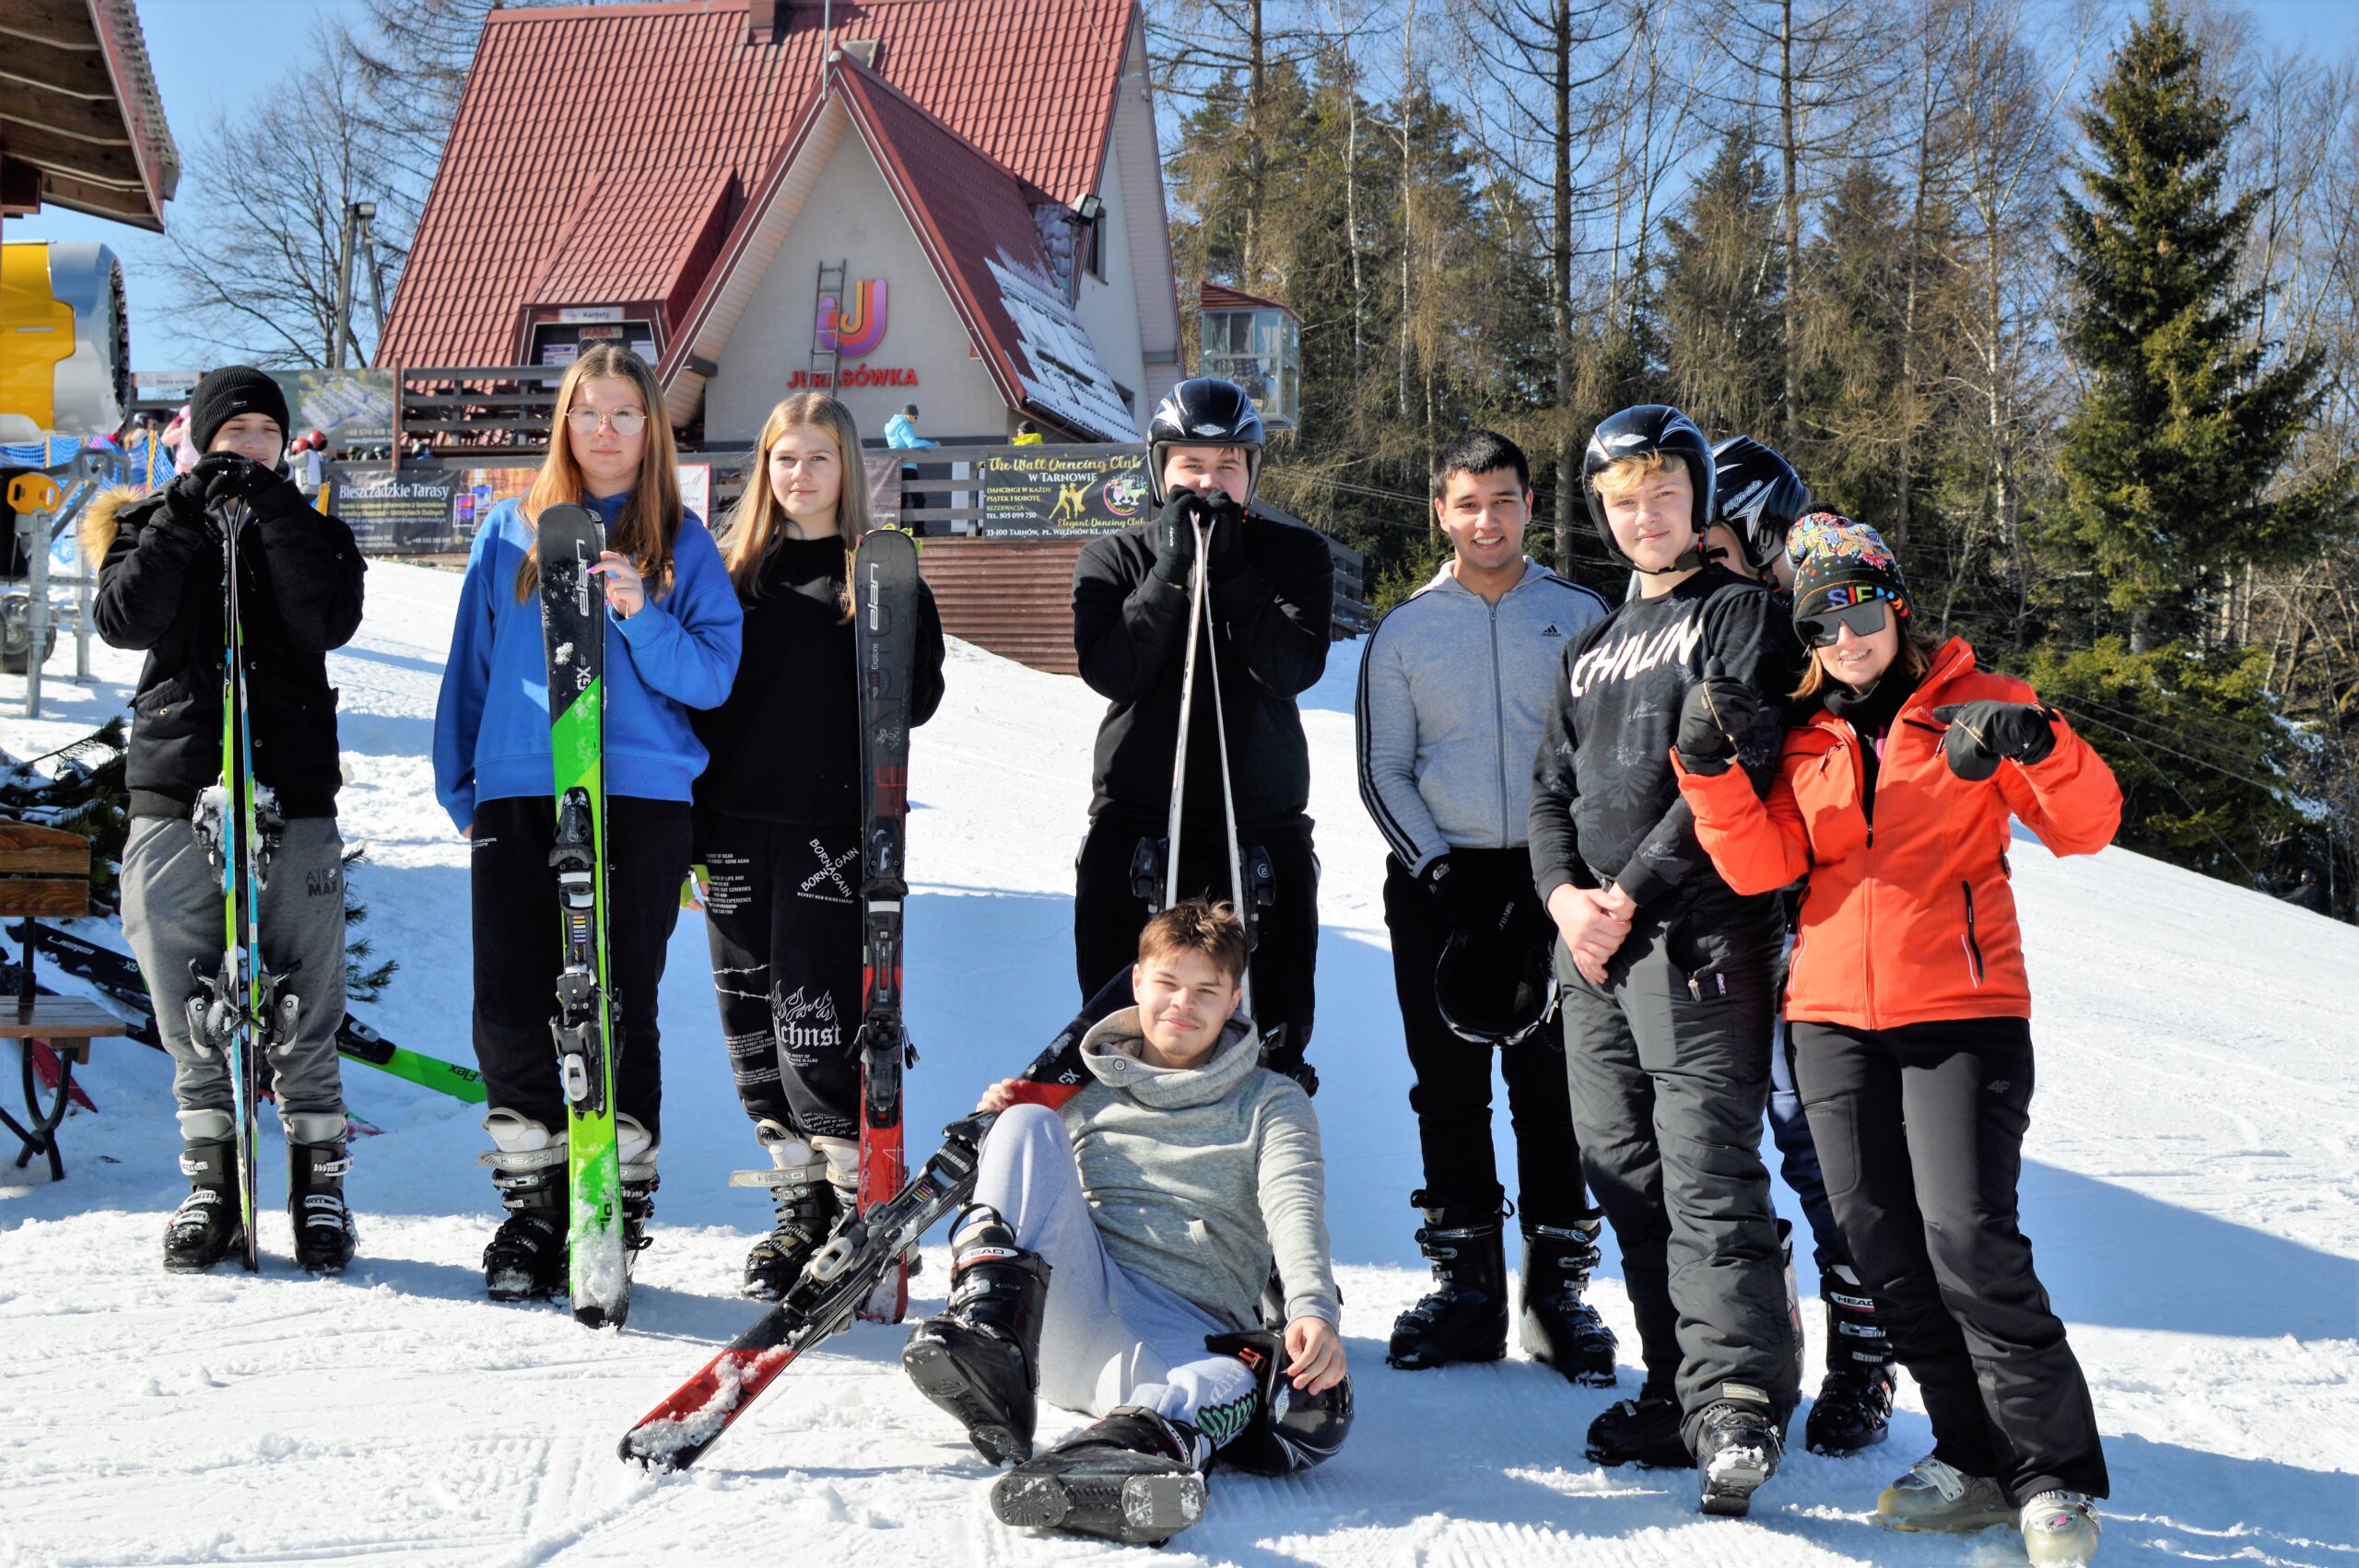 Wyjazd na narty – stok narciarski „Jurasówka”